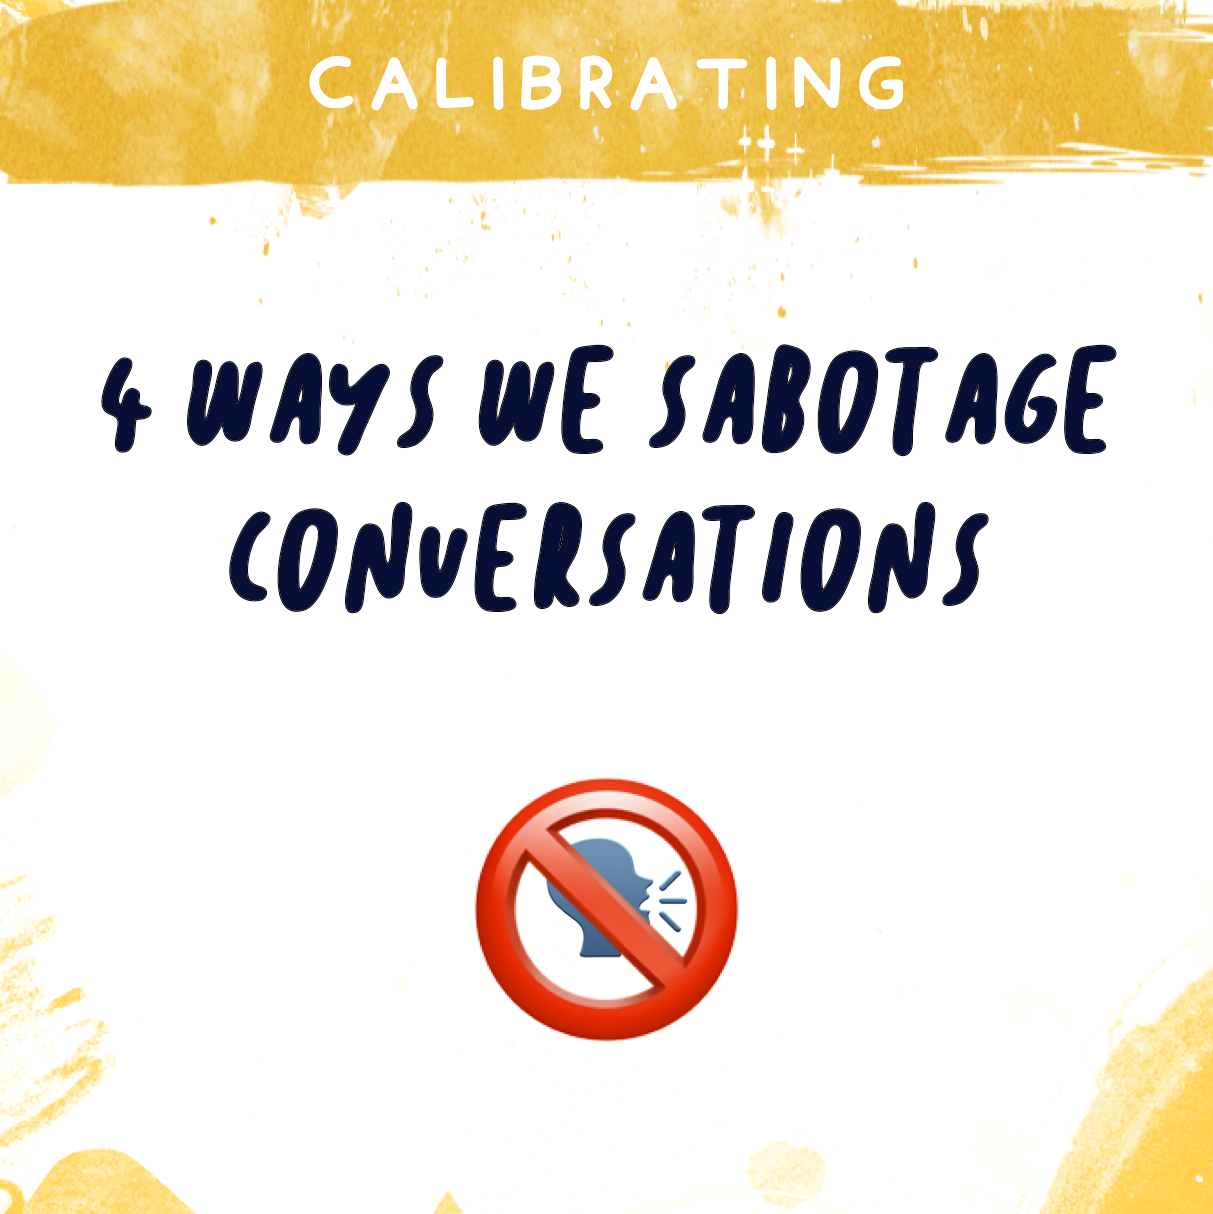 4 Ways We Sabotage Communication